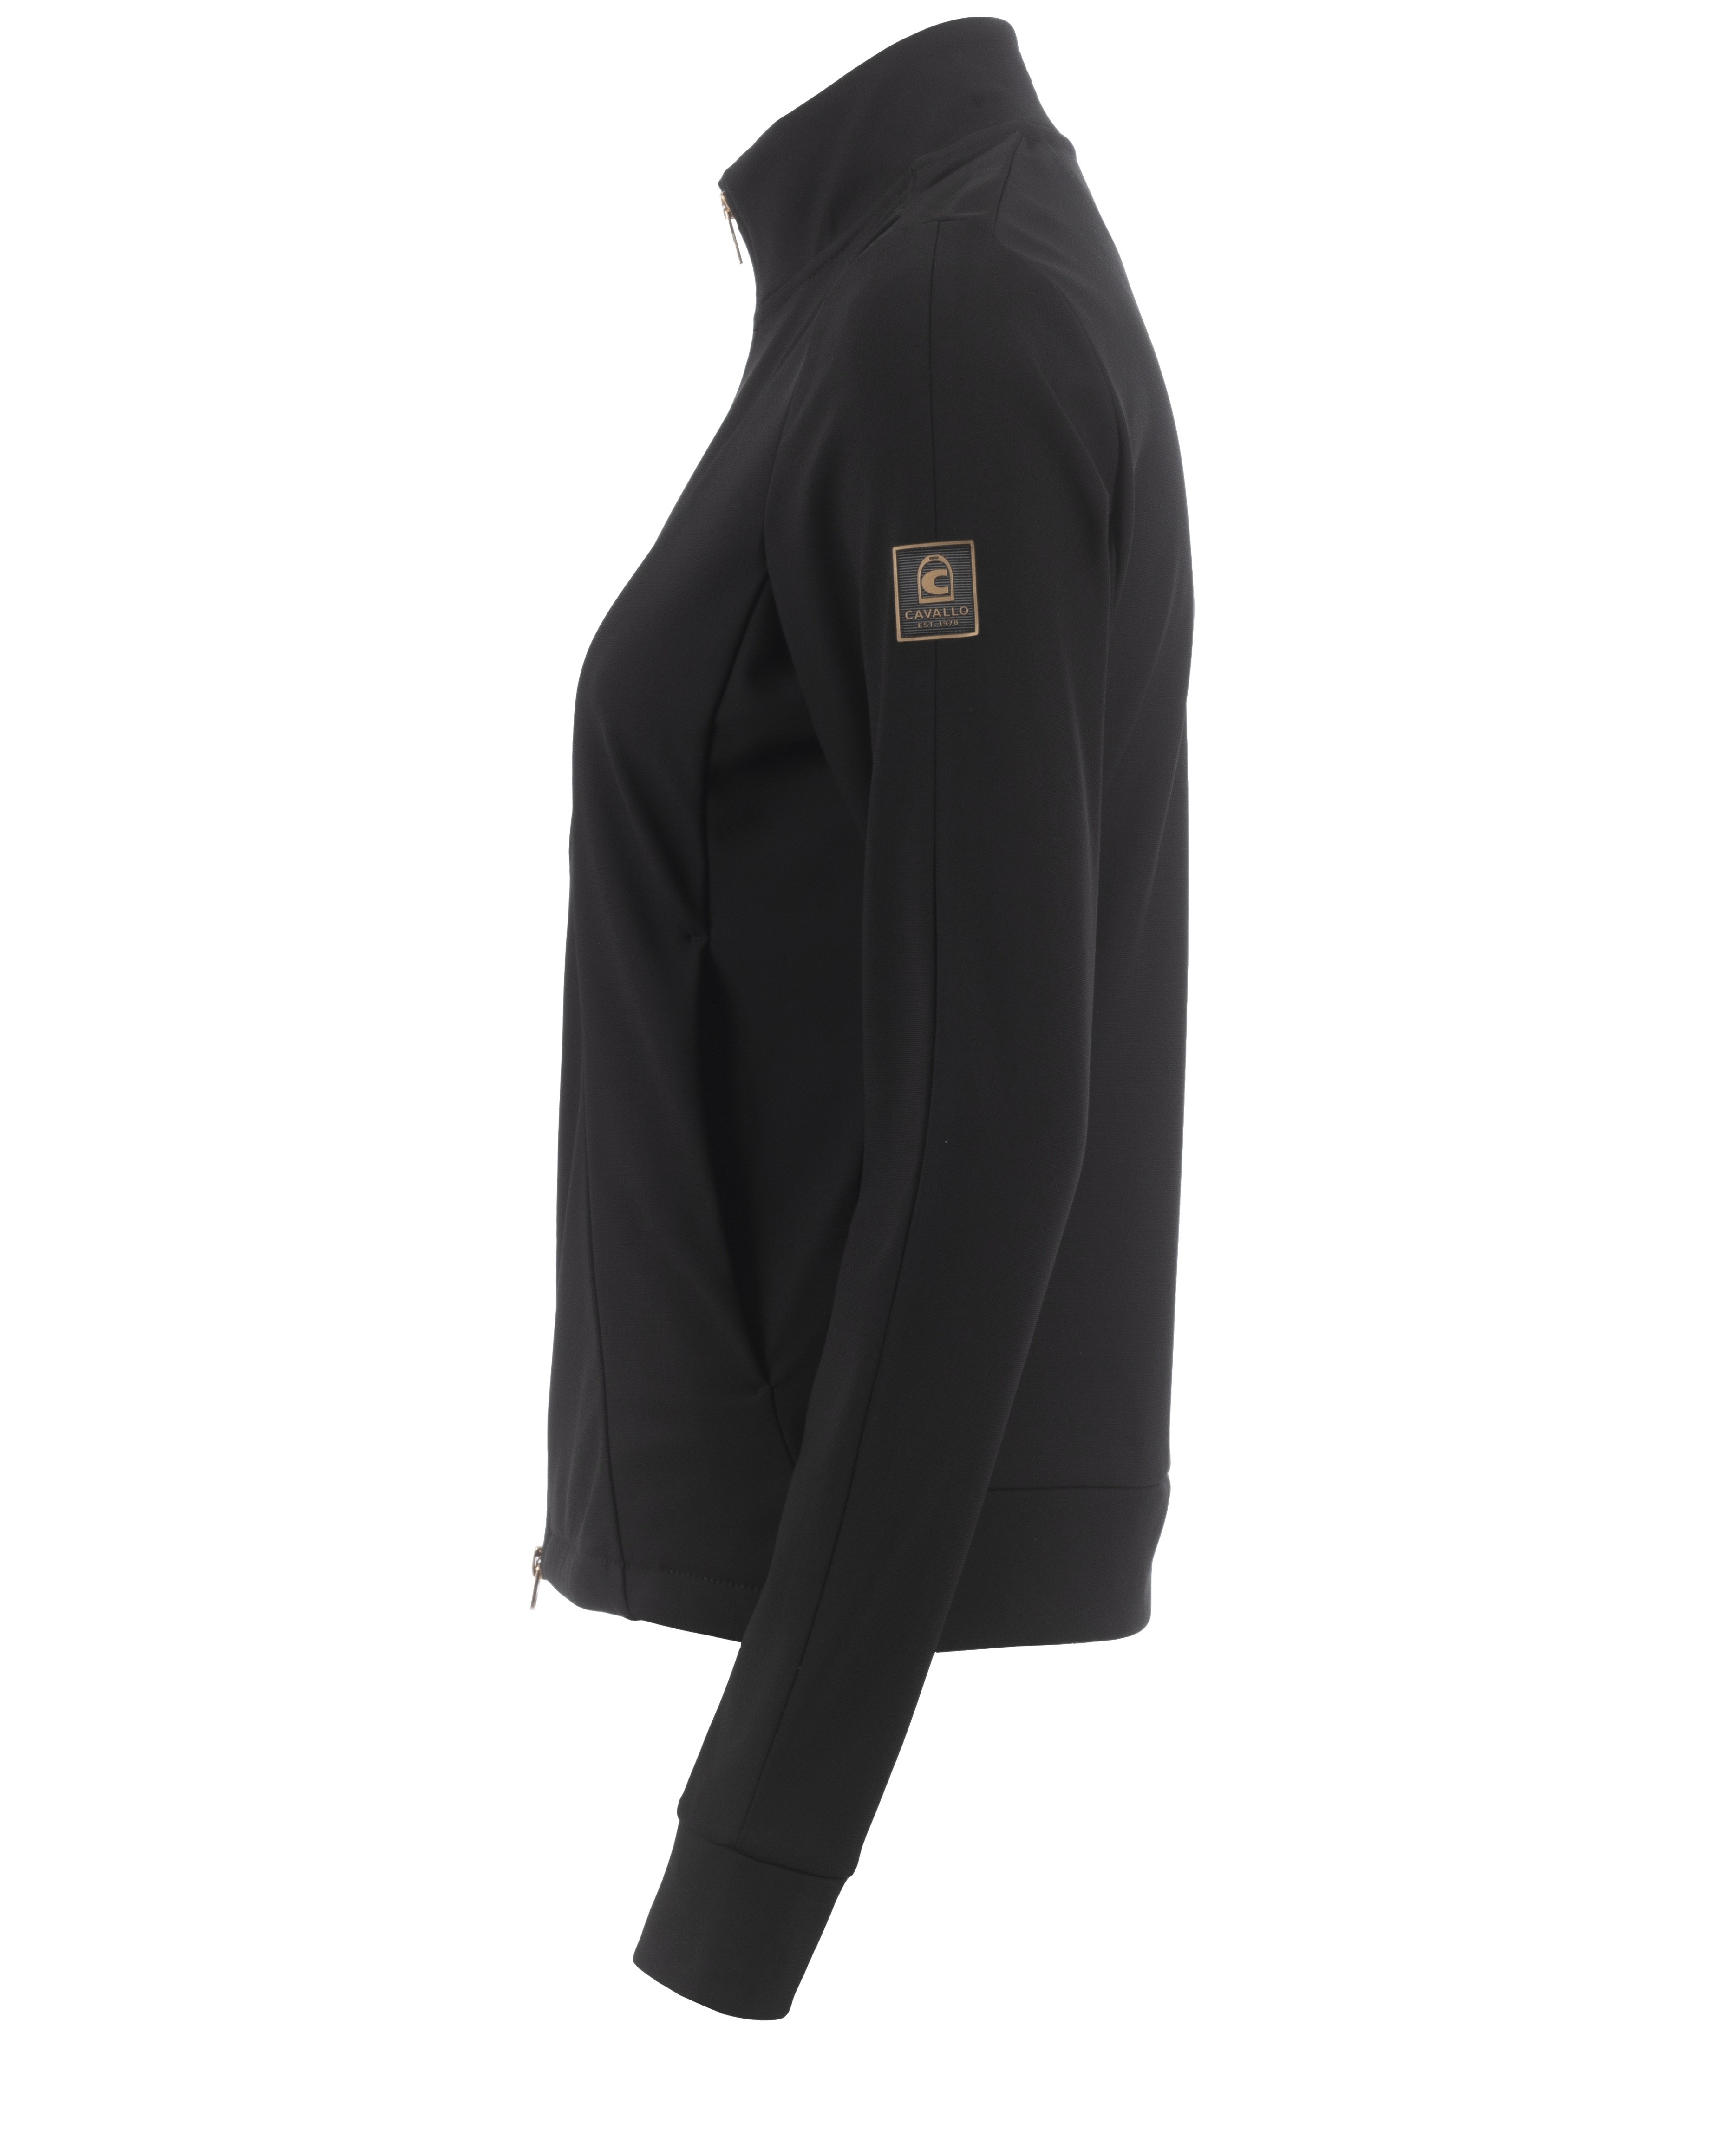 Jacke Damen CAVALLona Premium in schwarz